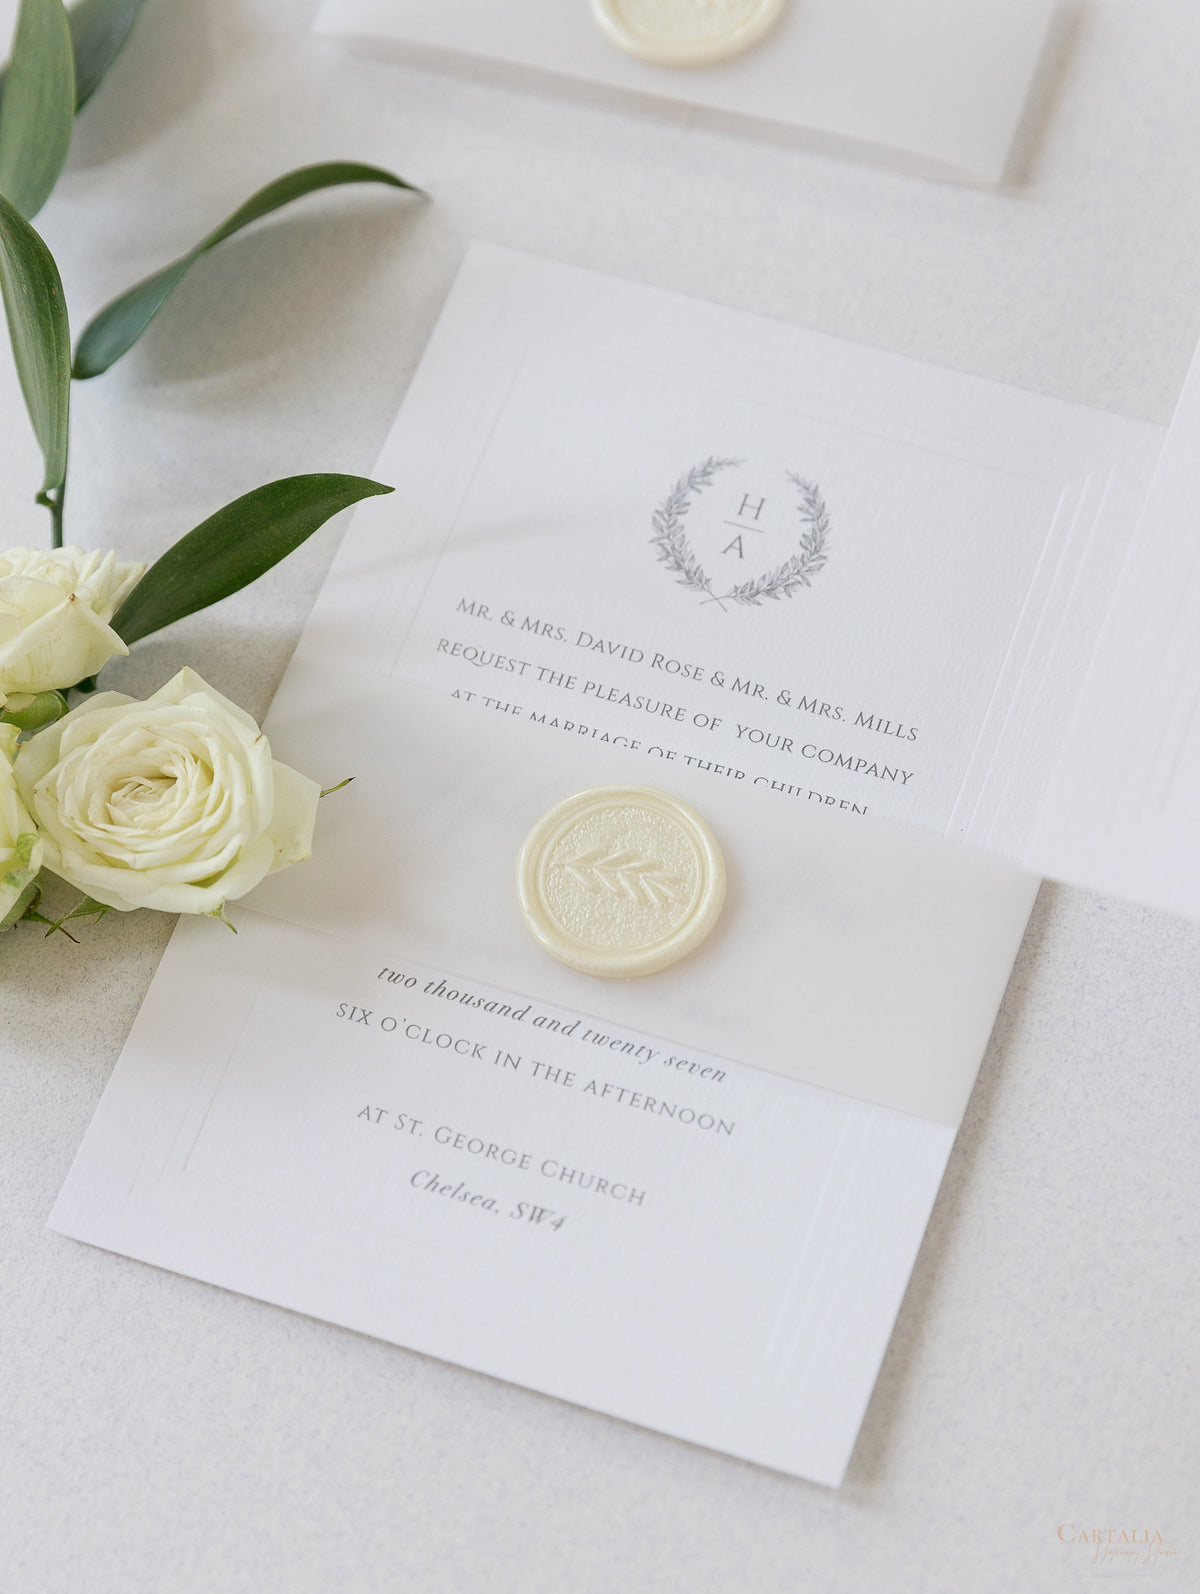 Invitación de noche de boda moderna con marco hundido triple en relieve atemporal y sello de cera